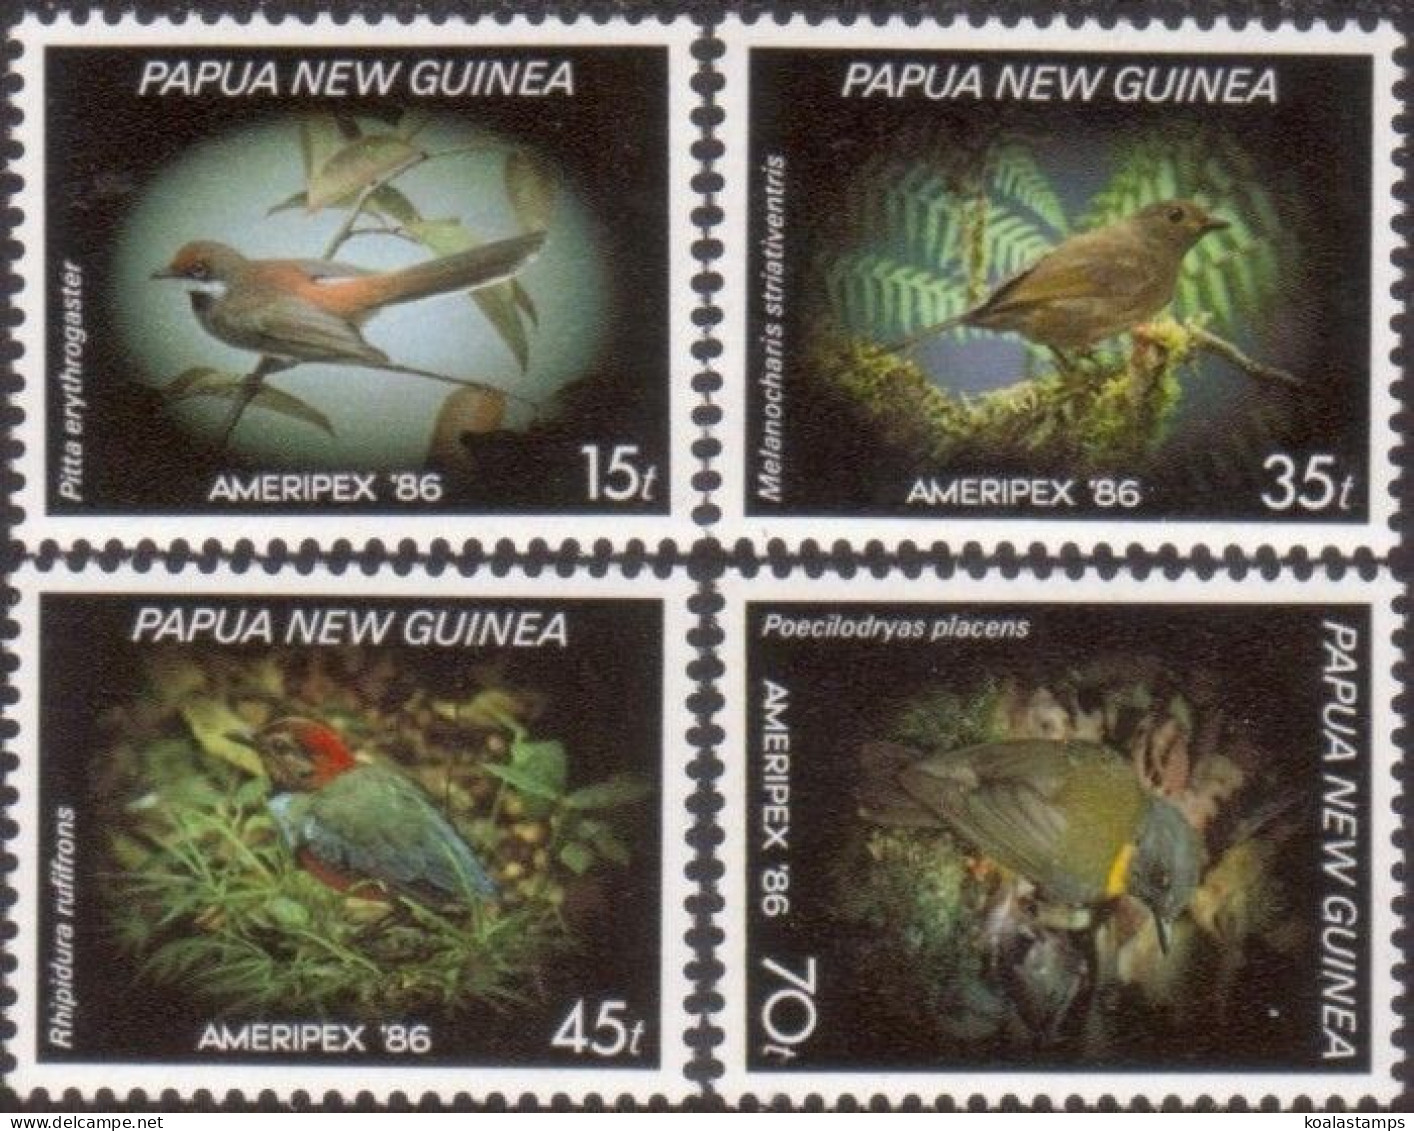 Papua New Guinea 1986 SG525 Small Birds Ameripex '86 Set MNH - Papua New Guinea